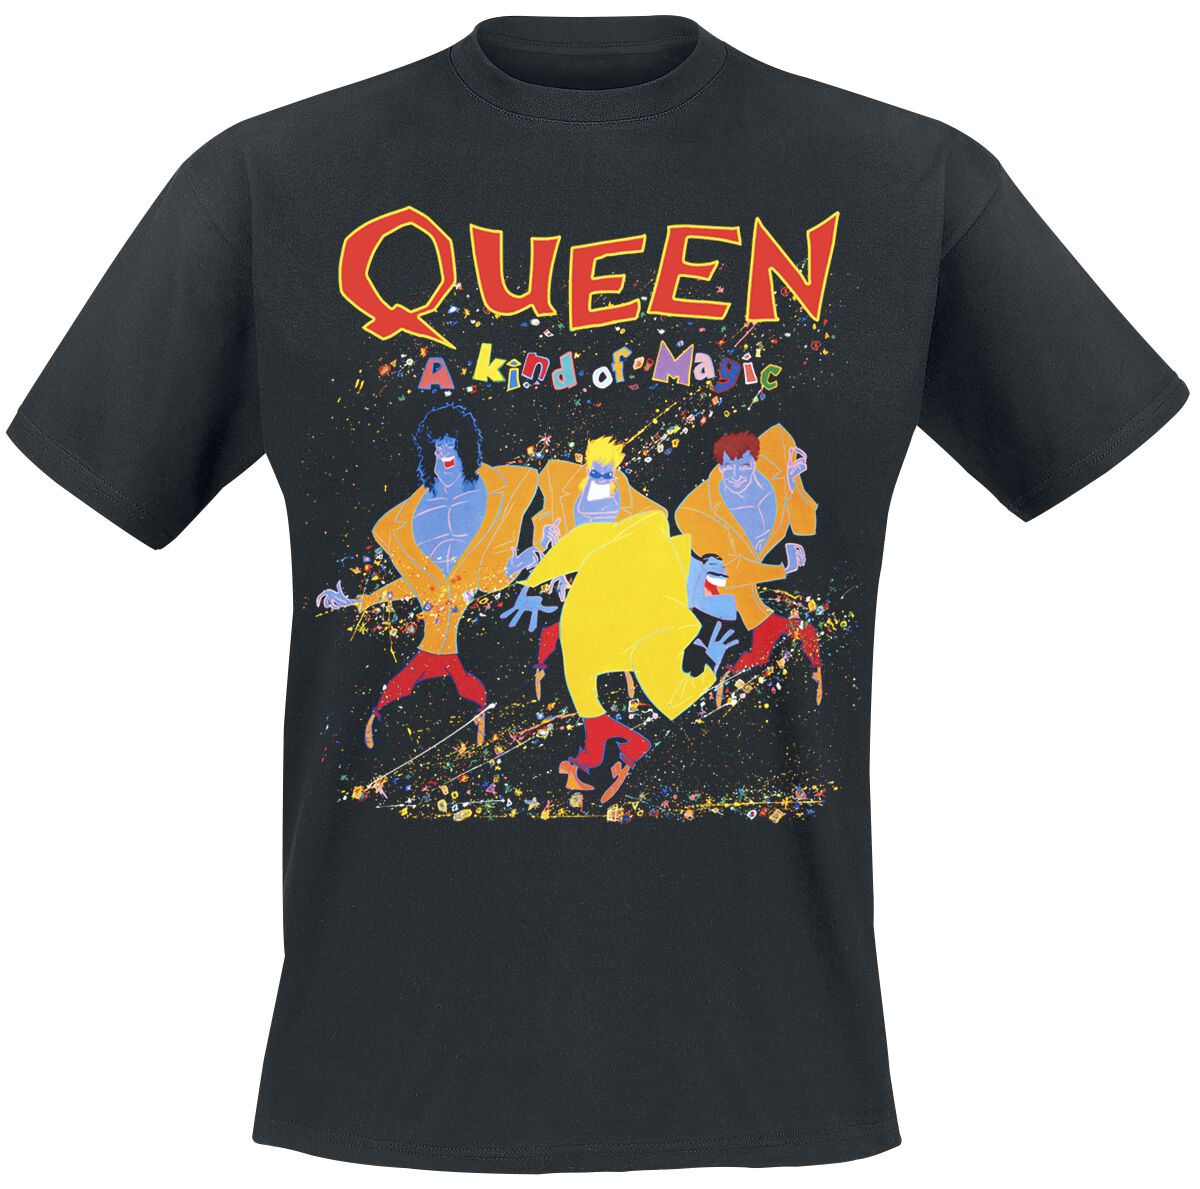 Queen T-Shirt - A Kind Of Magic - S bis 5XL - für Männer - Größe 5XL - schwarz  - Lizenziertes Merchandise!